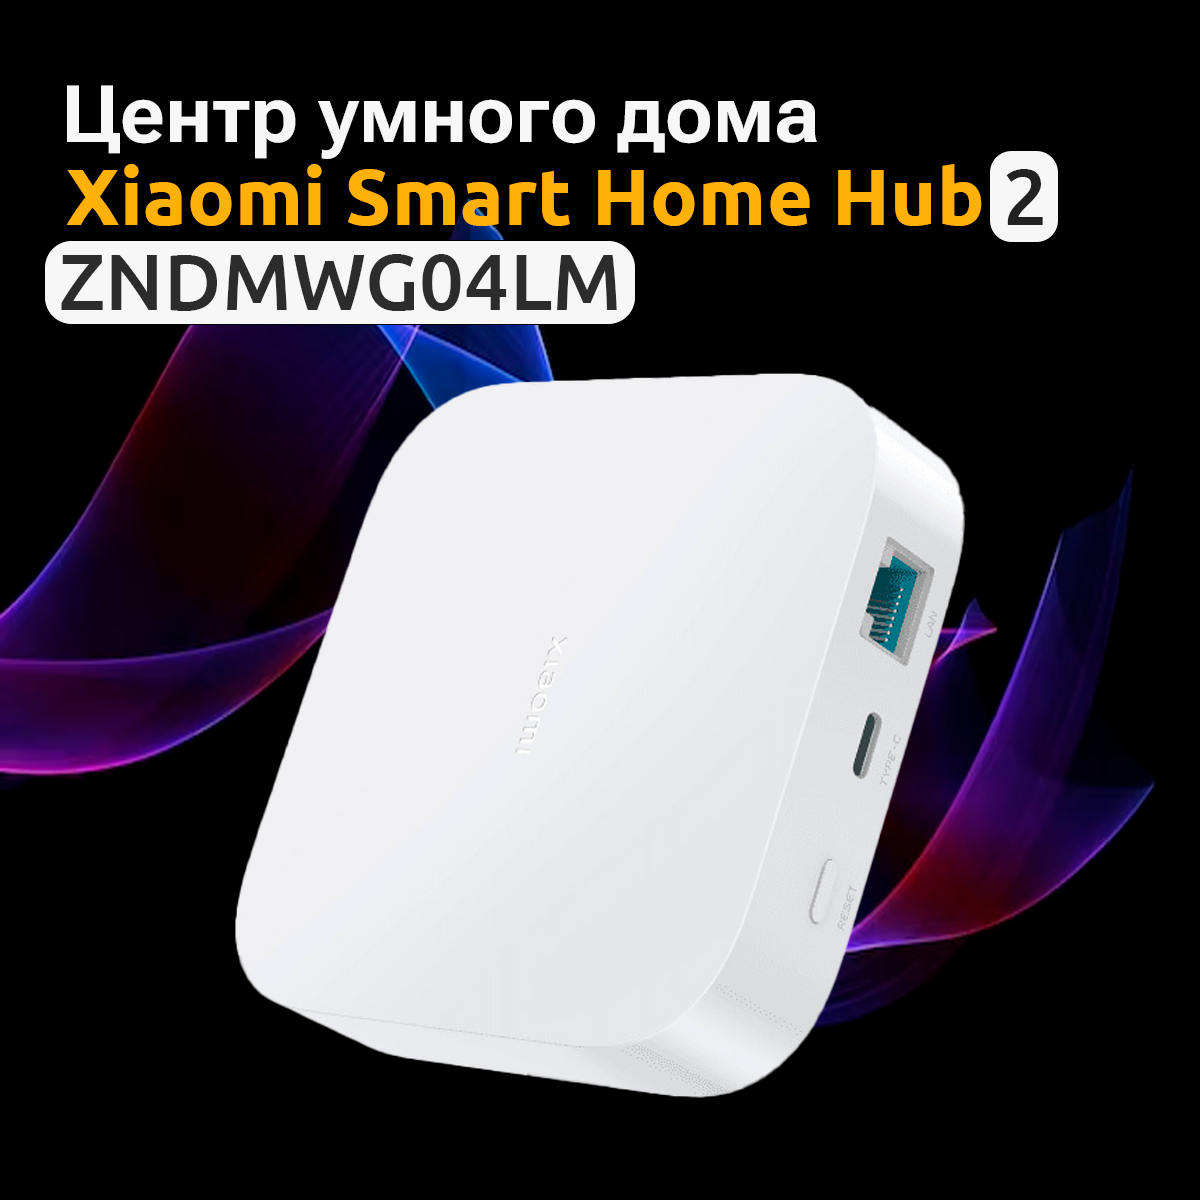 Центр управления умным домом Xiaomi Smart Home Hub 2, ZNDMWG04LM шлюз